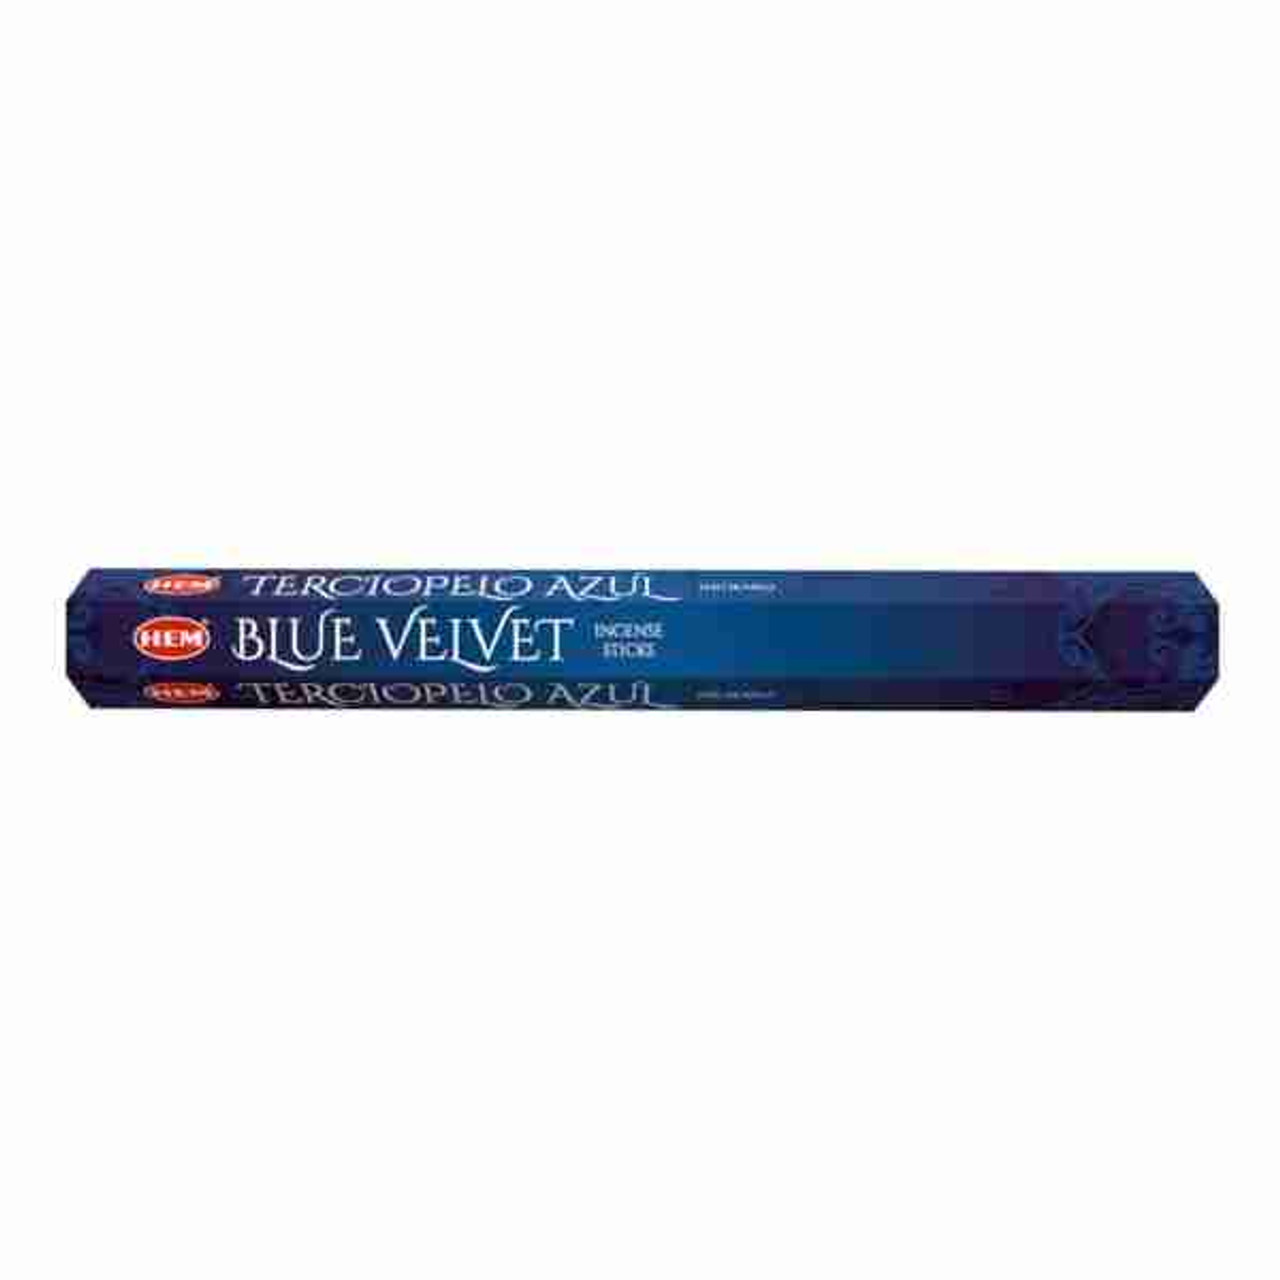 Blue Velvet Incense Sticks